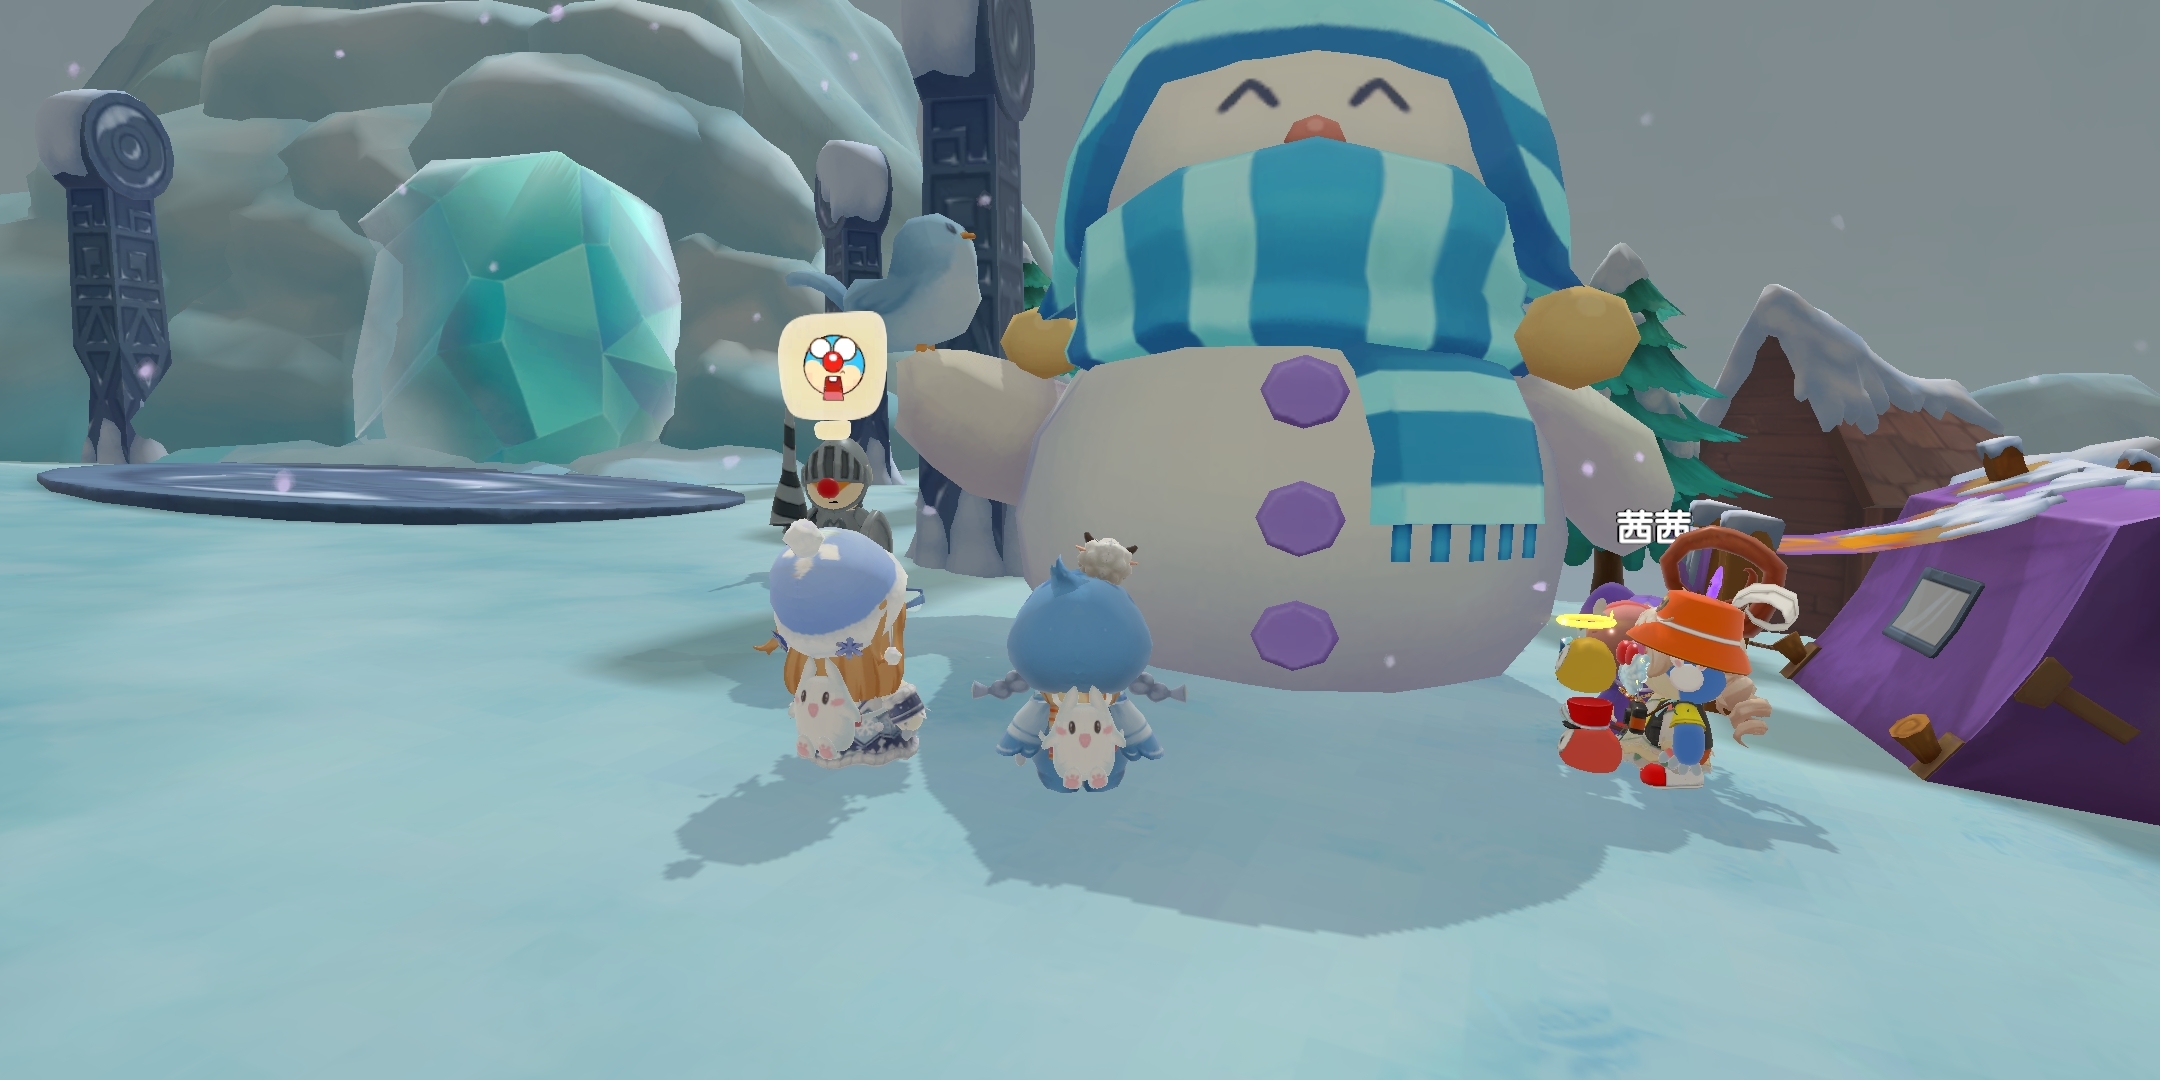 庄园彩蛋：道理我都懂，可是这个雪人为什么这么大？